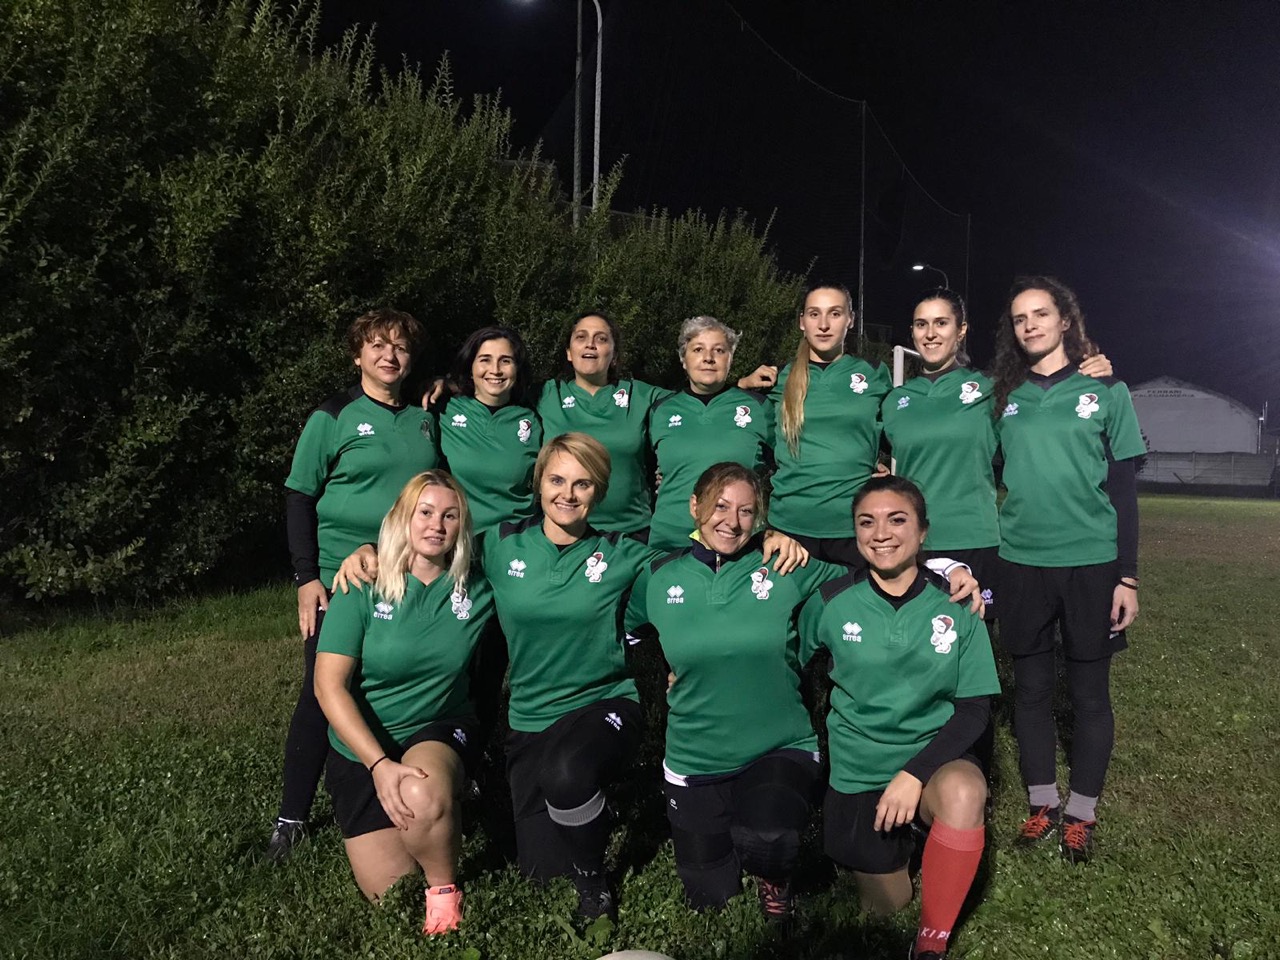 Dopo gli allenamenti, siamo stati a cena le Bonardas, la squadra di rugby femminile di Alessandria. Un terzo tempo a base di birra tra i locali della città